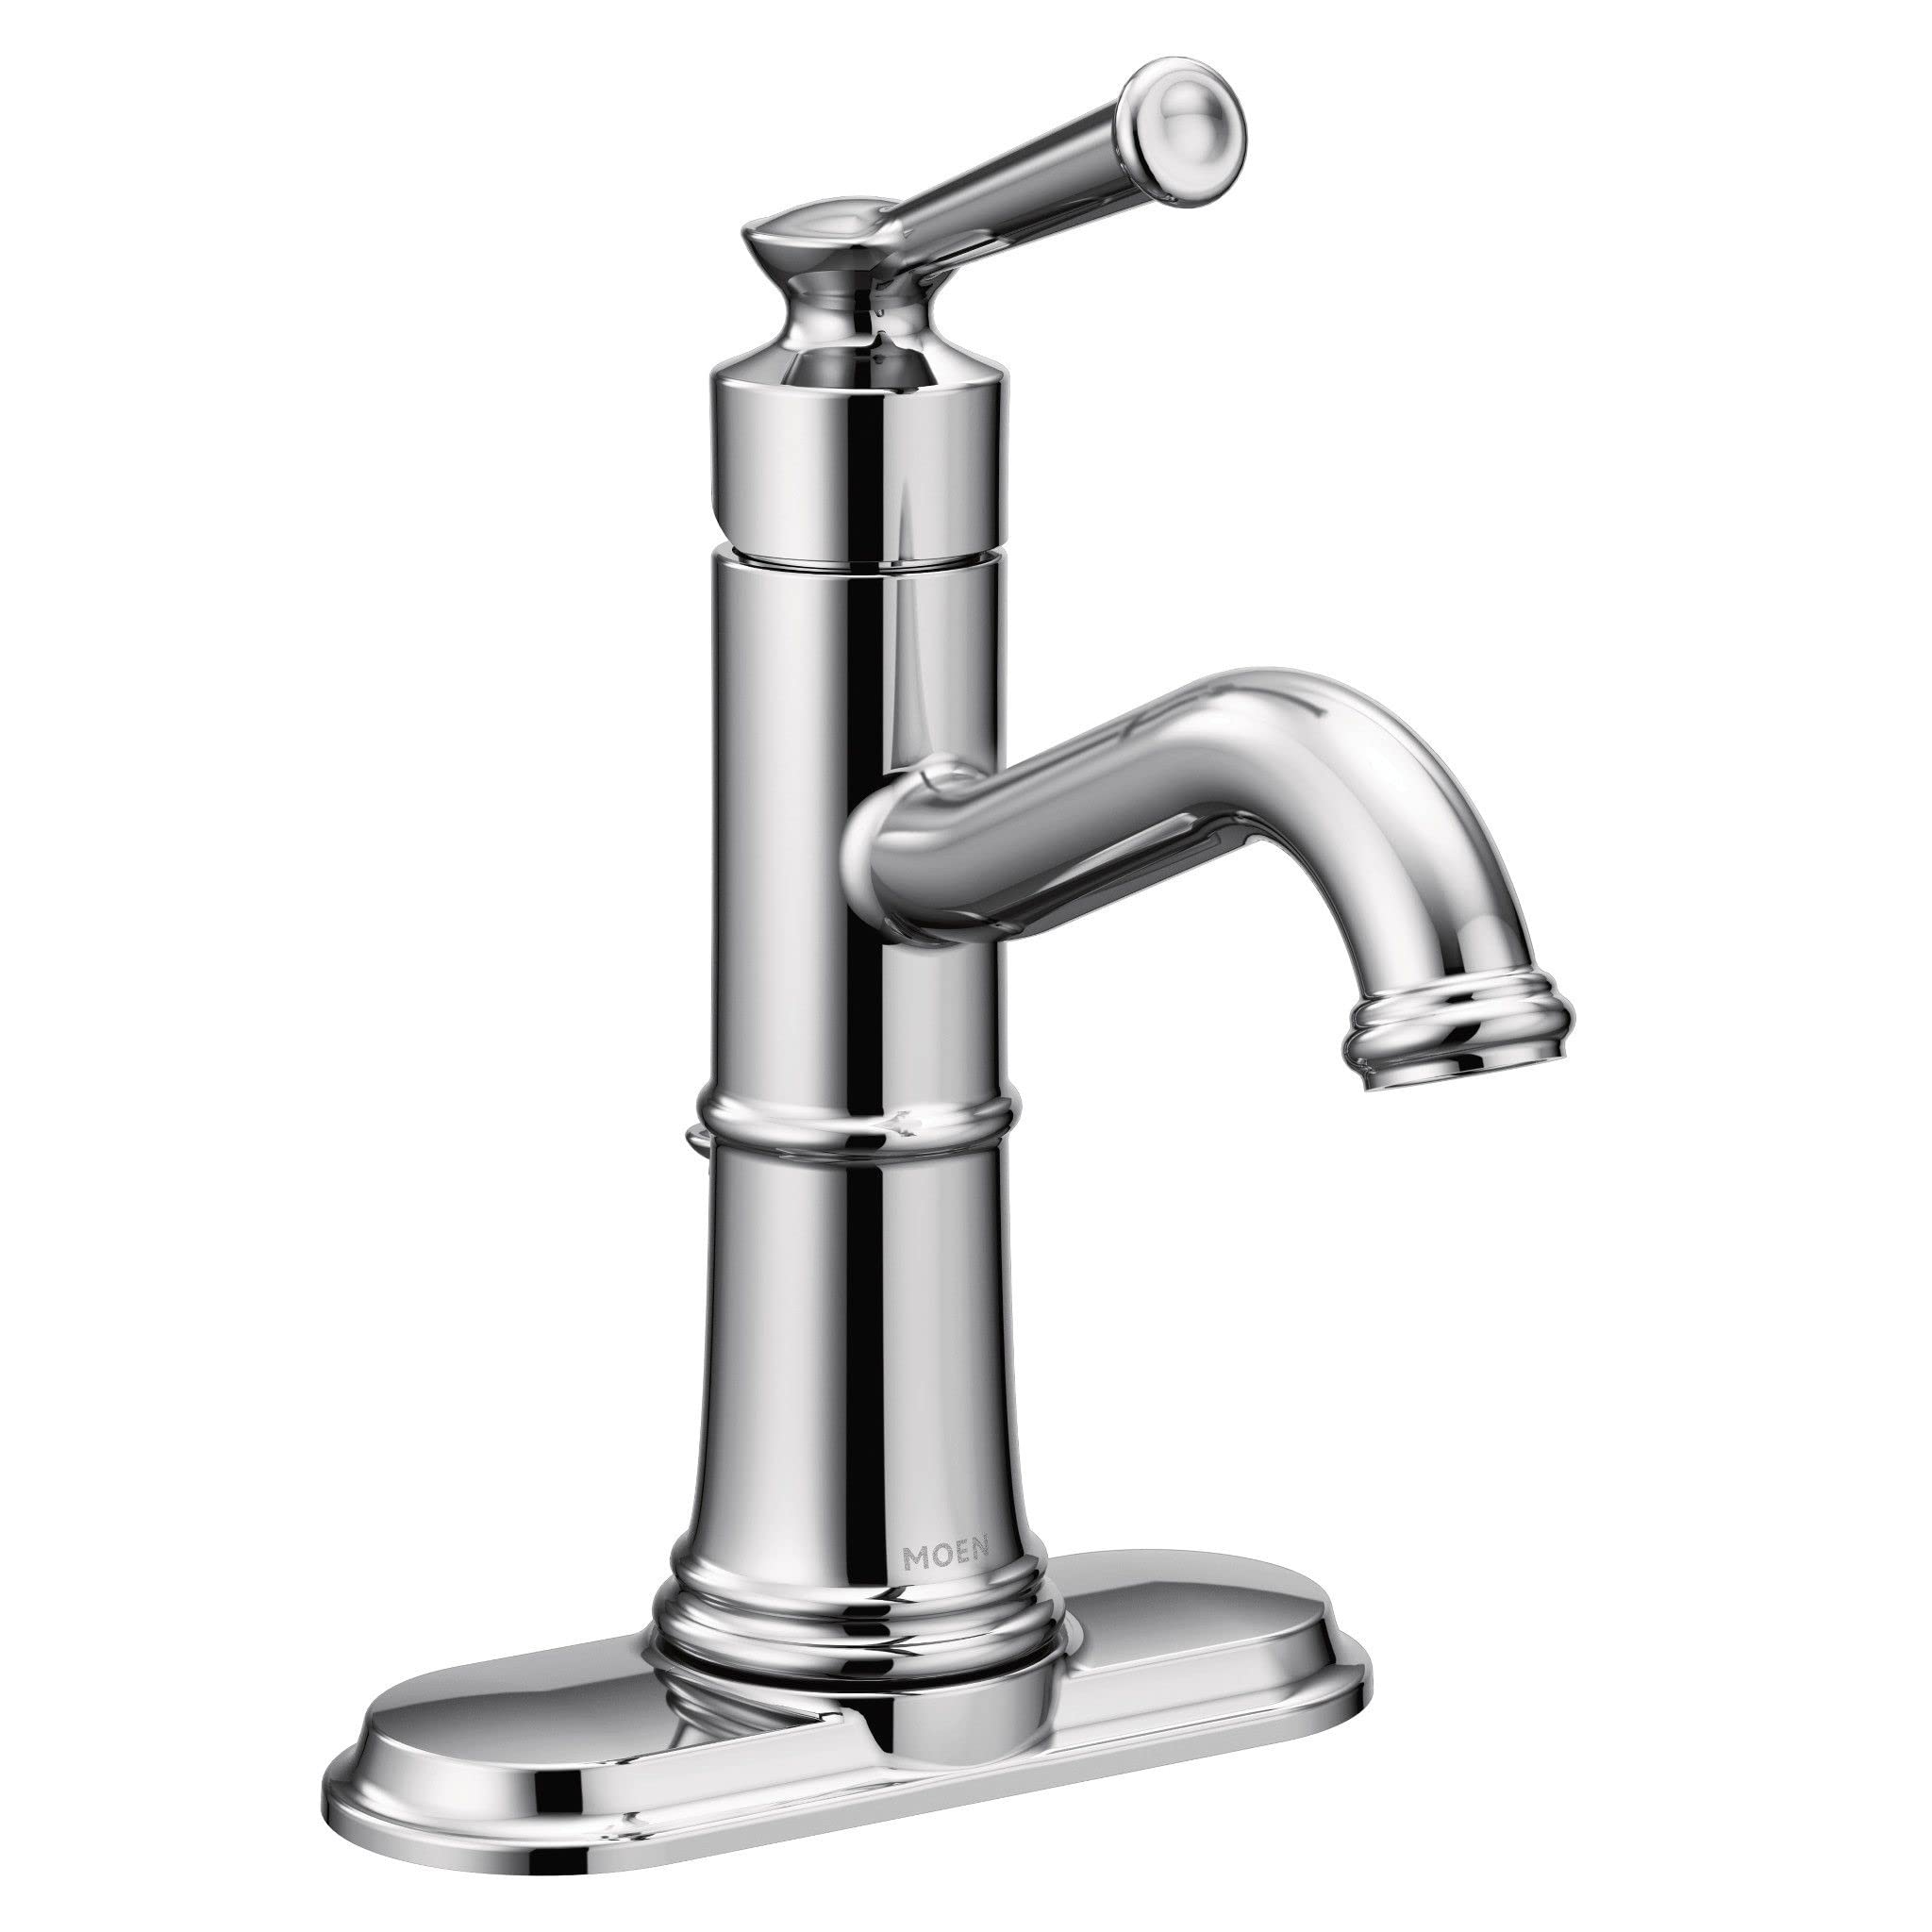 Moen Belfield Chrome One-Handle Bathroom Faucet, 6402